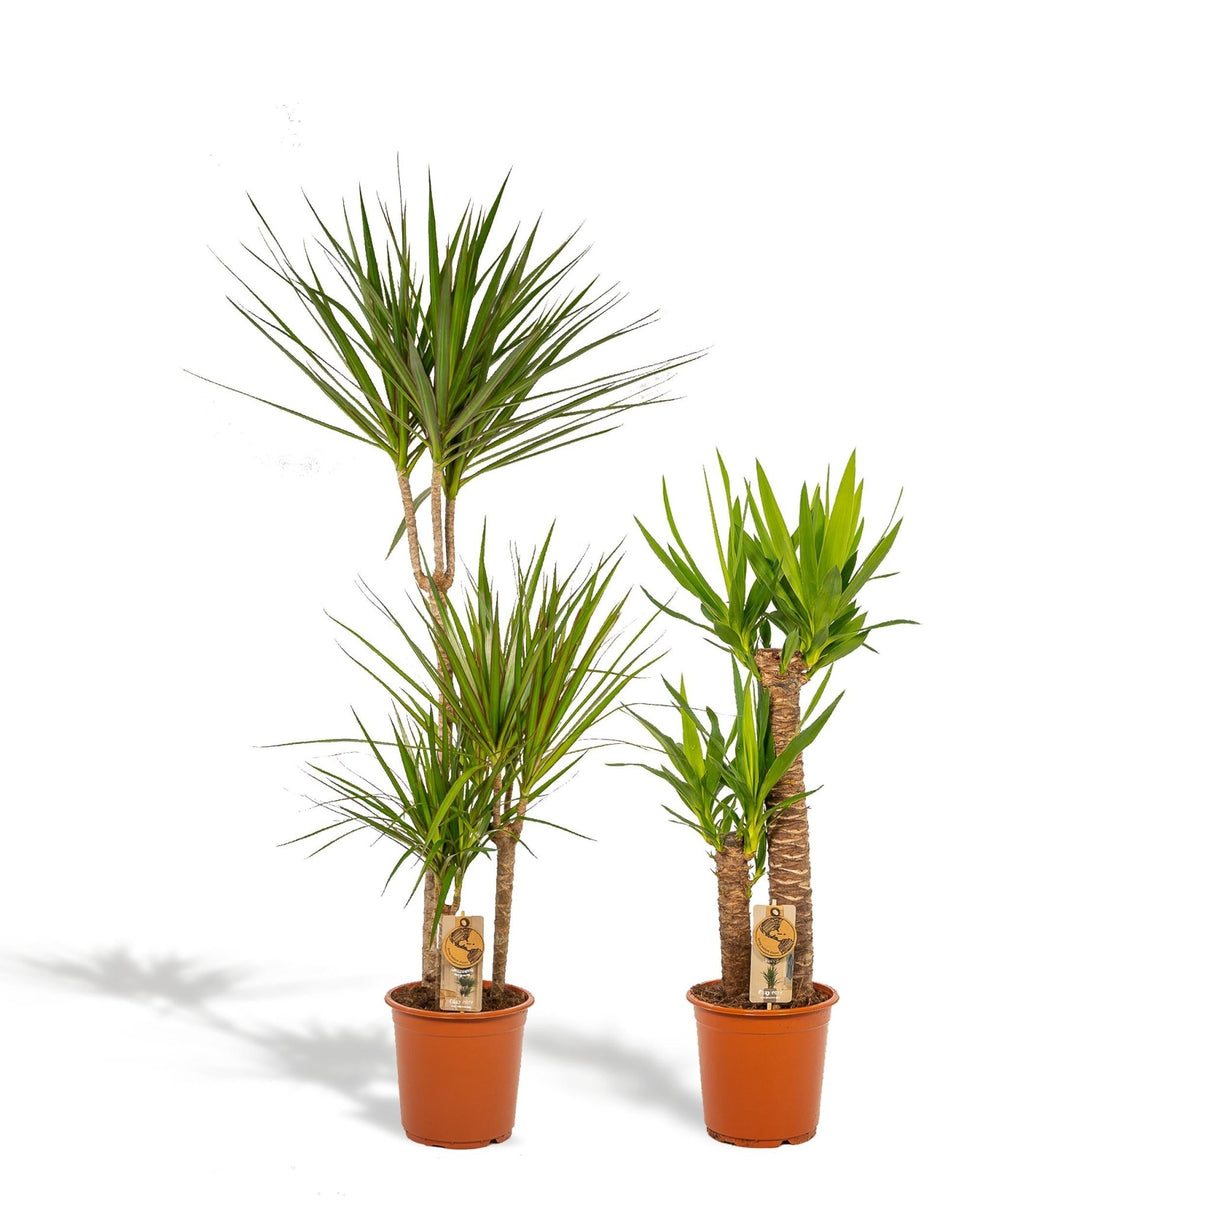 Livraison plante - Yucca, Dracaena, duo de plantes - grandes plantes d'intérieur